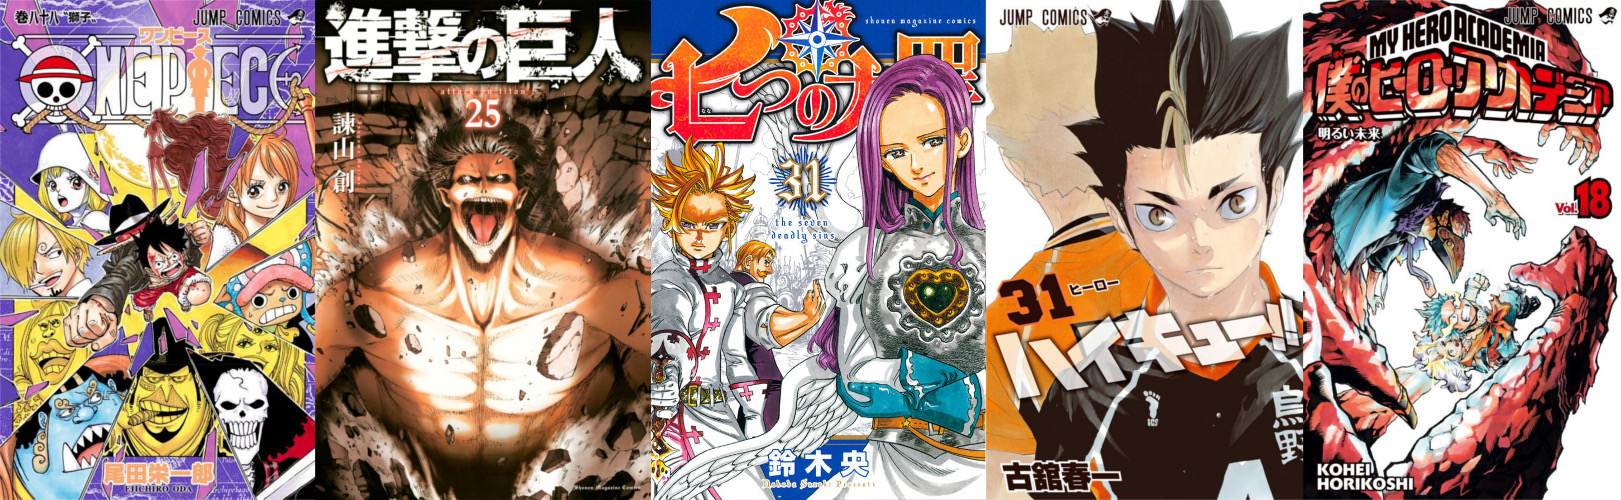 Les meilleures ventes Manga